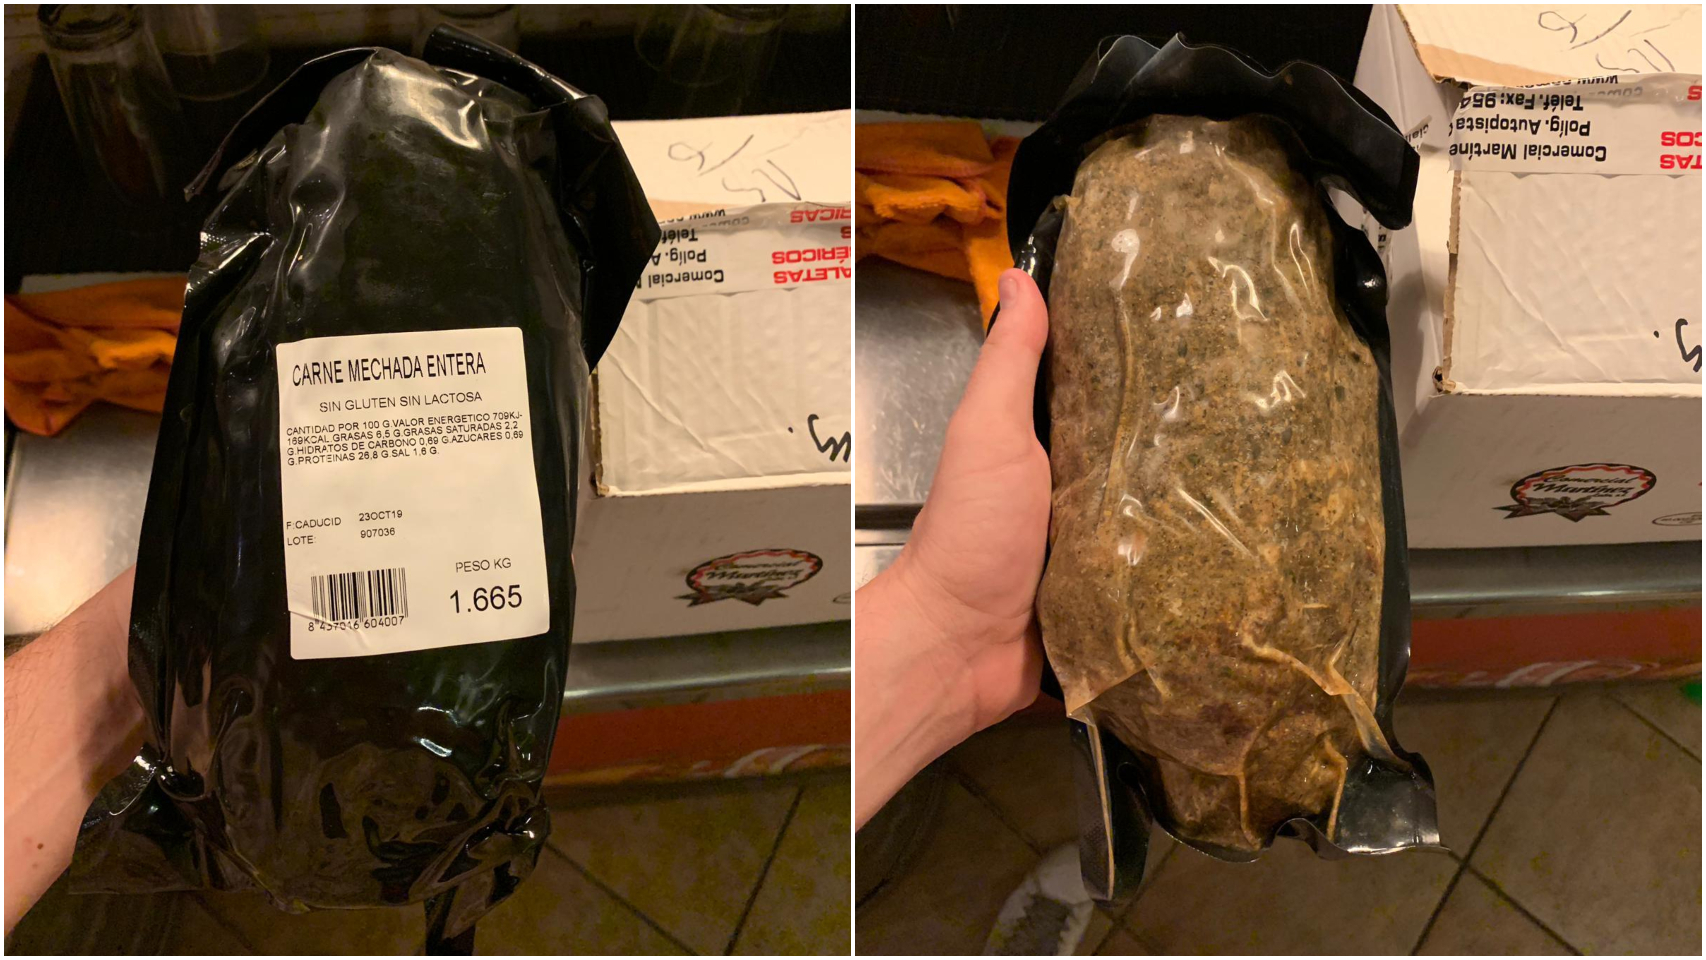 Las fotos de la carne mechada contaminada que ha compartido el Ministerio.